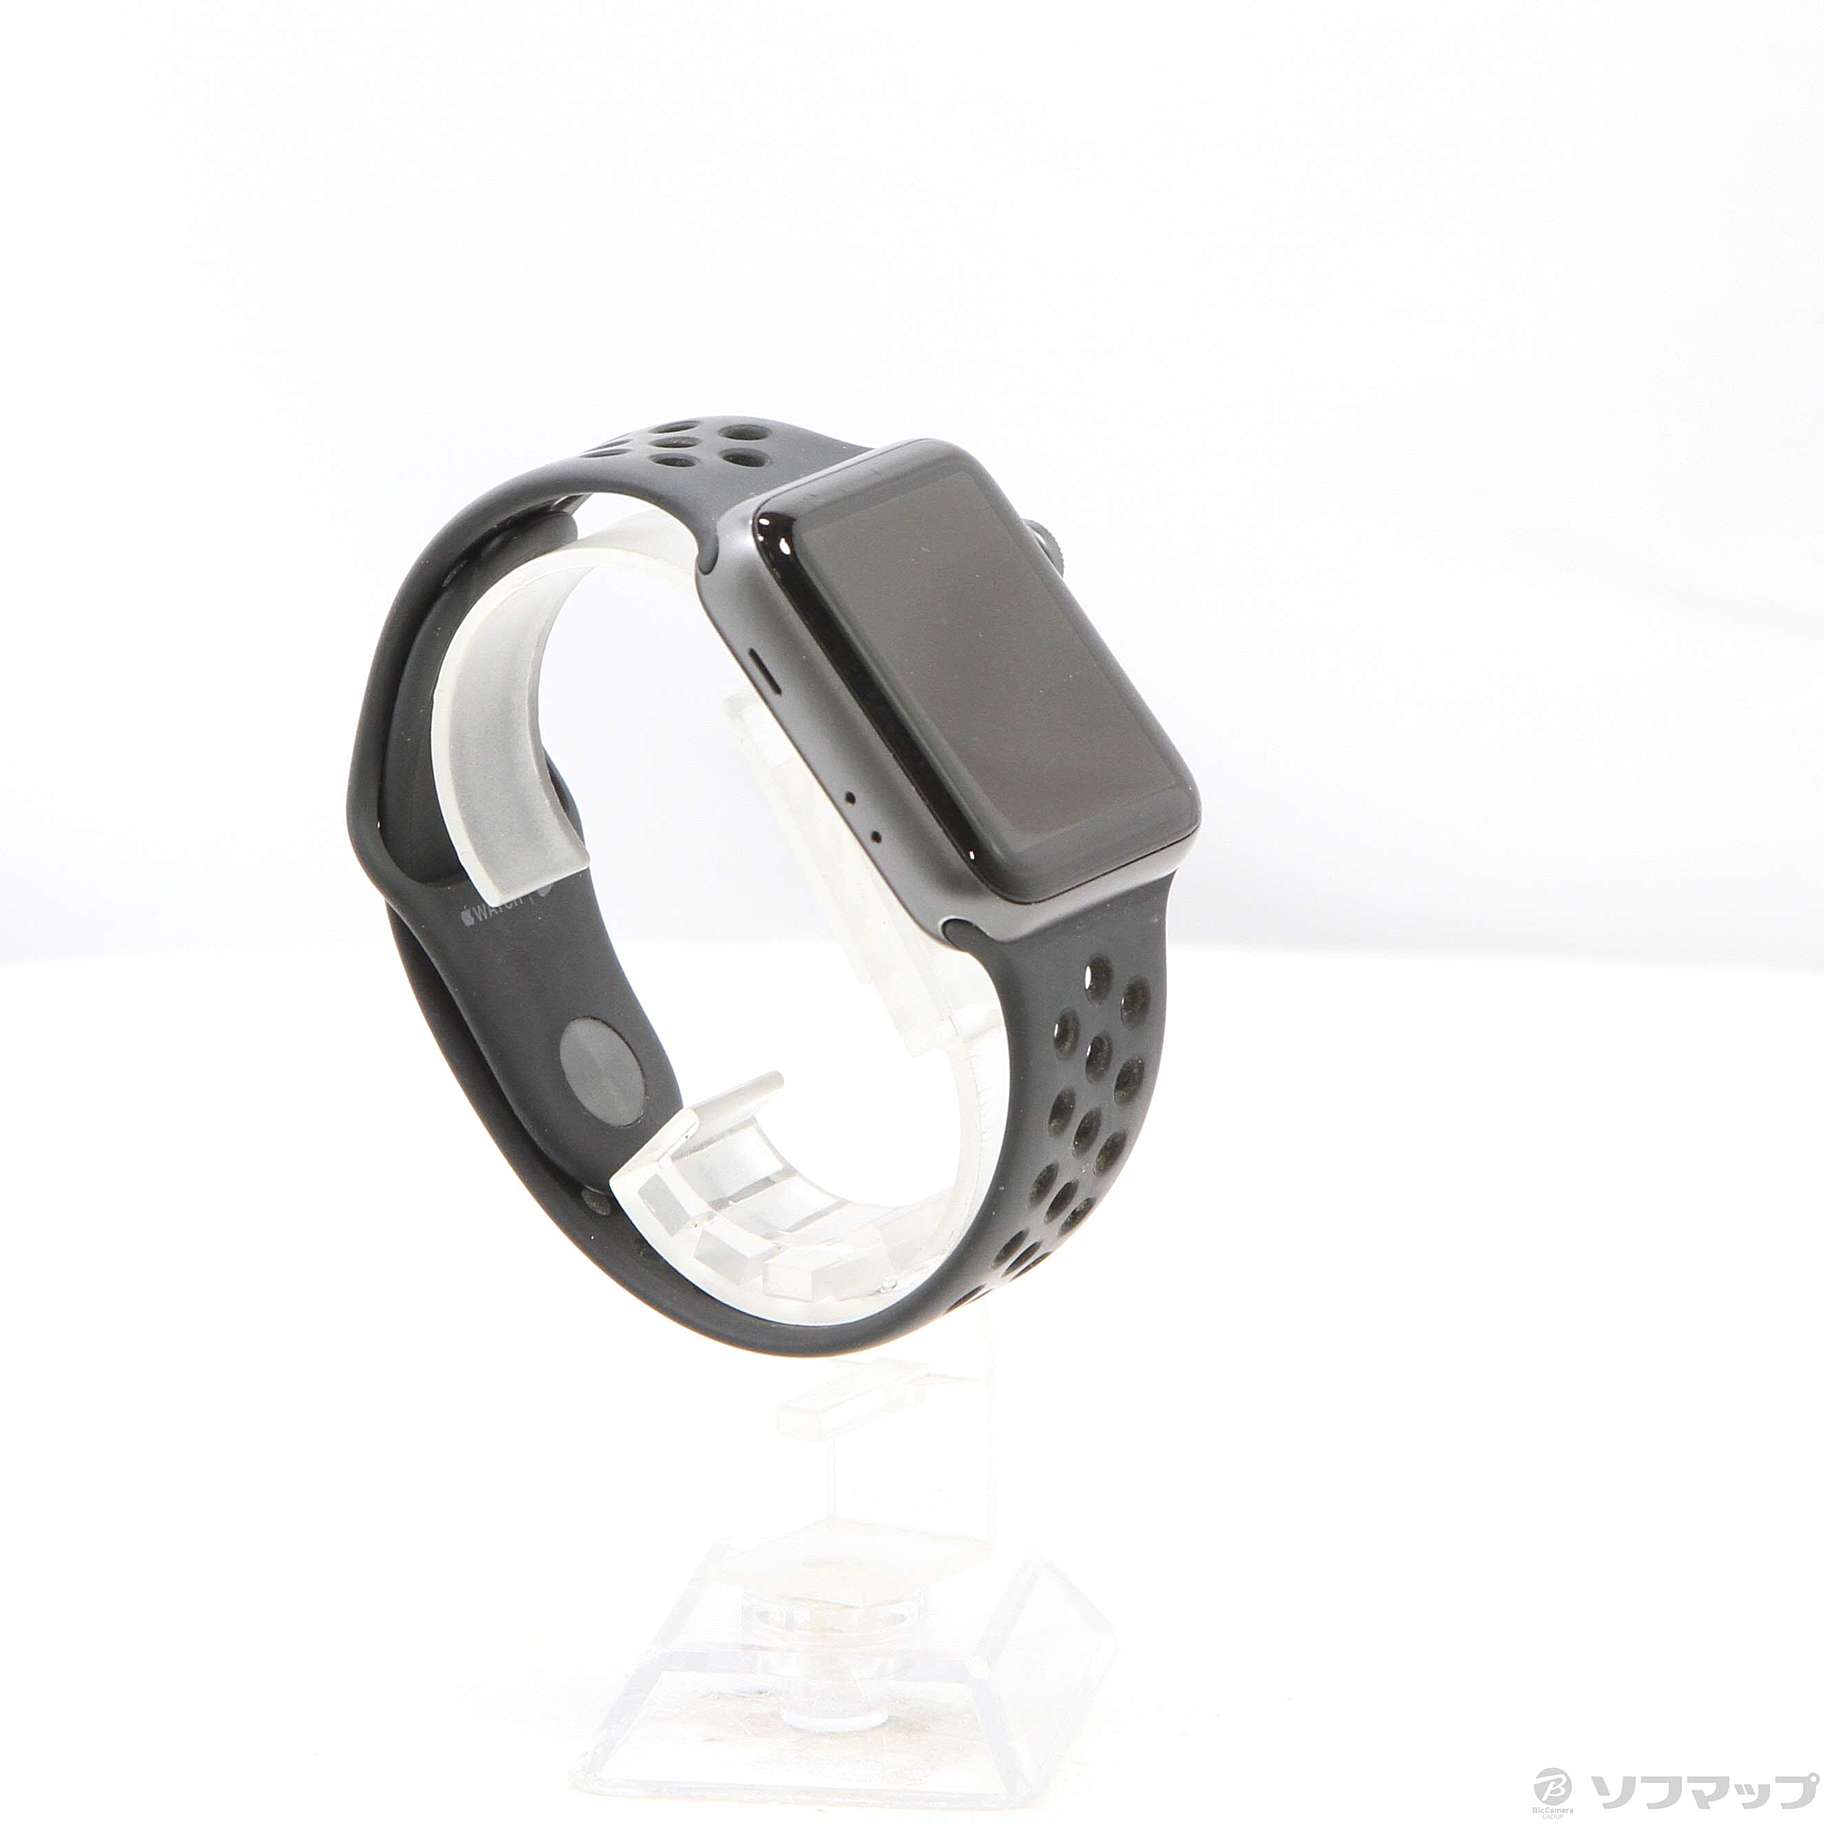 中古品〕 Apple Watch Series 3 Nike+ GPS 42mm スペースグレイ ...